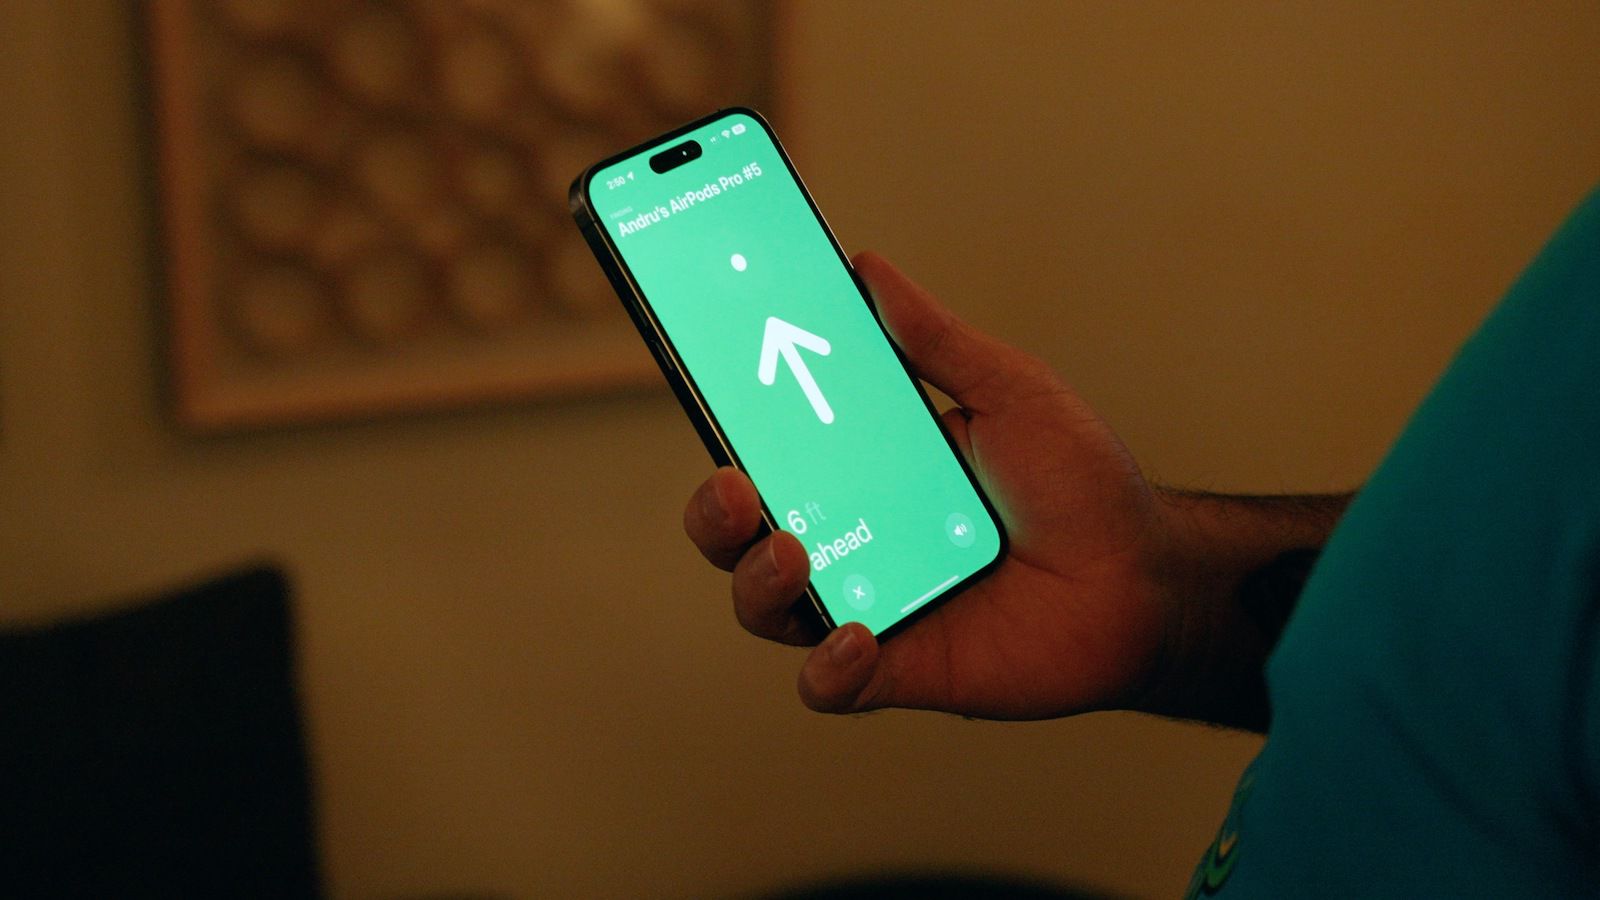 Na stronie iPhoneIslam.com osoba trzyma smartfon, wyświetla aplikację nawigacyjną ze strzałką kierunkową i nosi słuchawki AirPods.